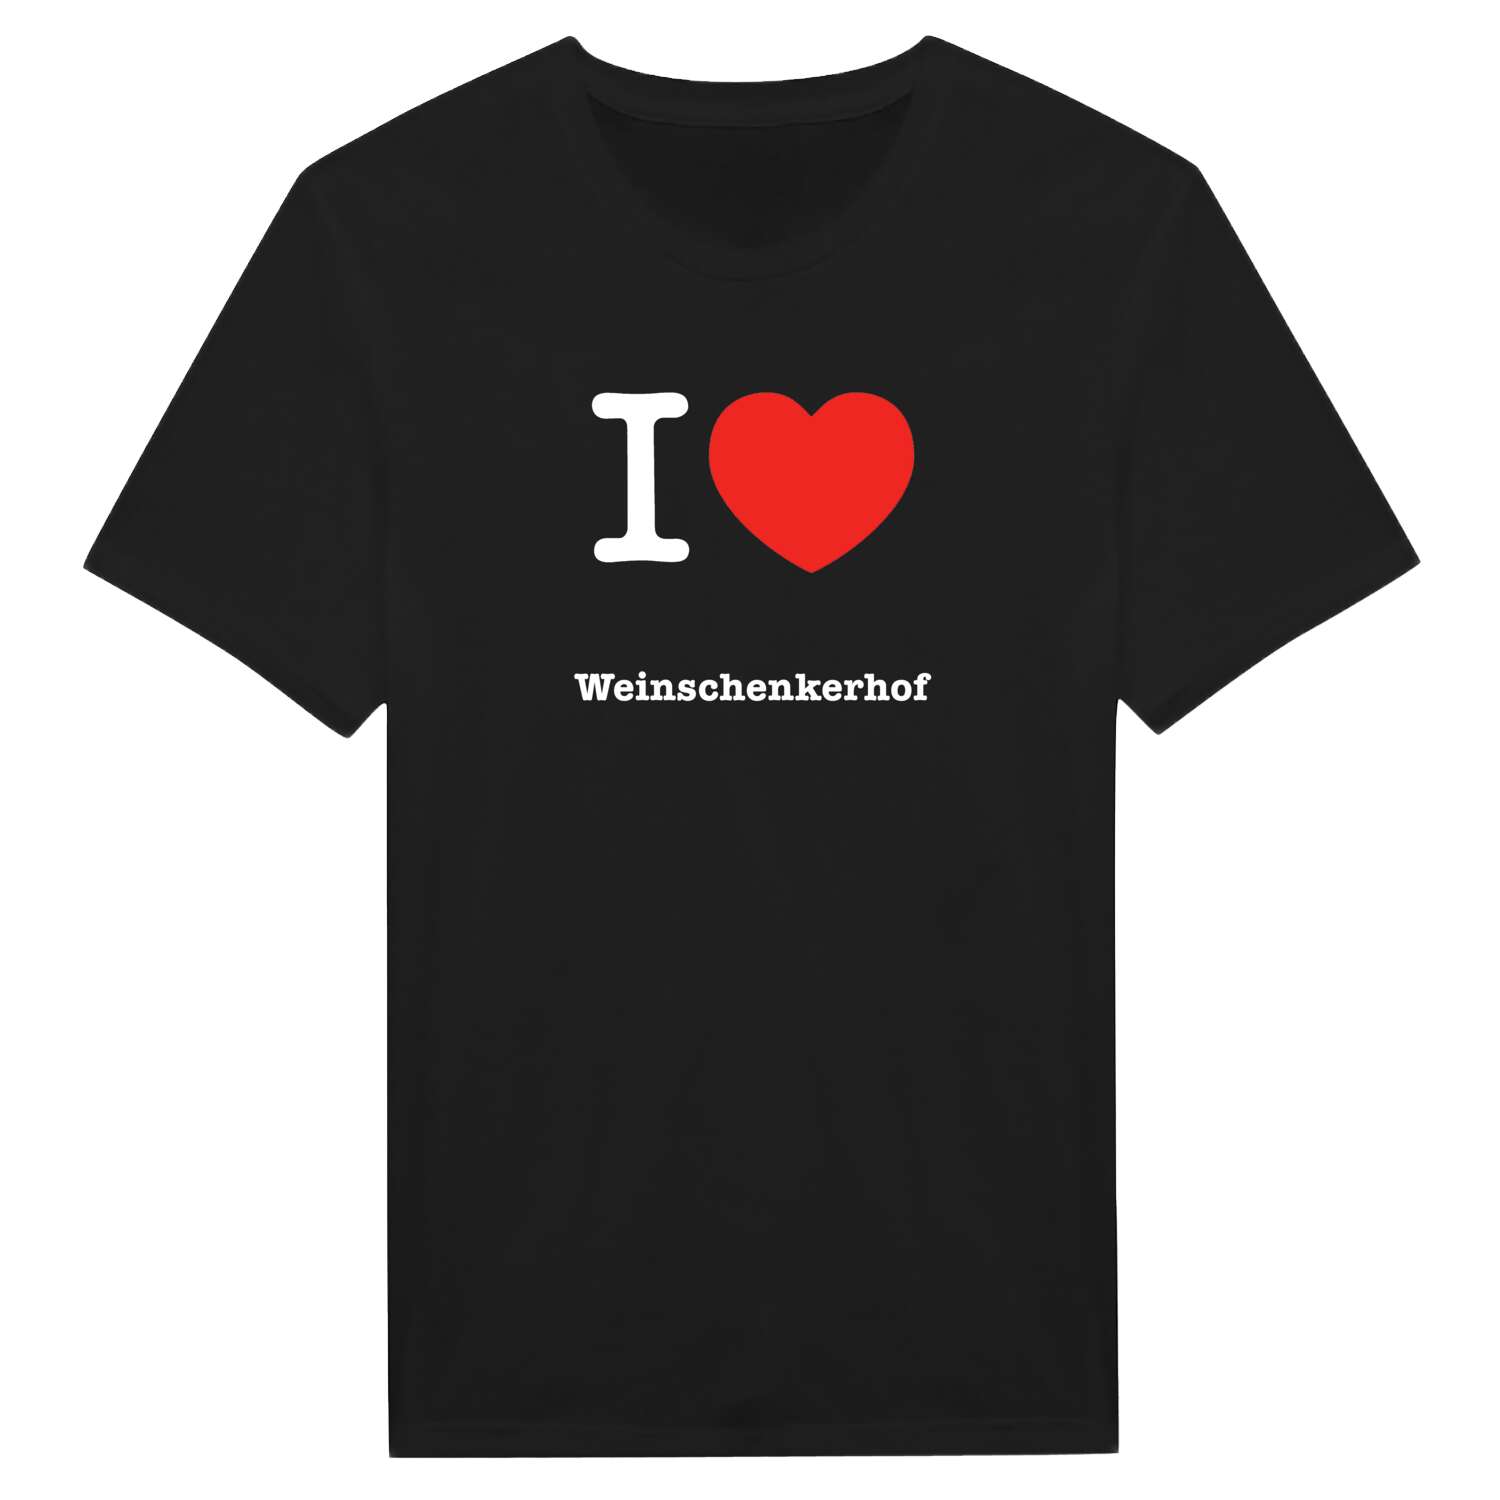 Weinschenkerhof T-Shirt »I love«